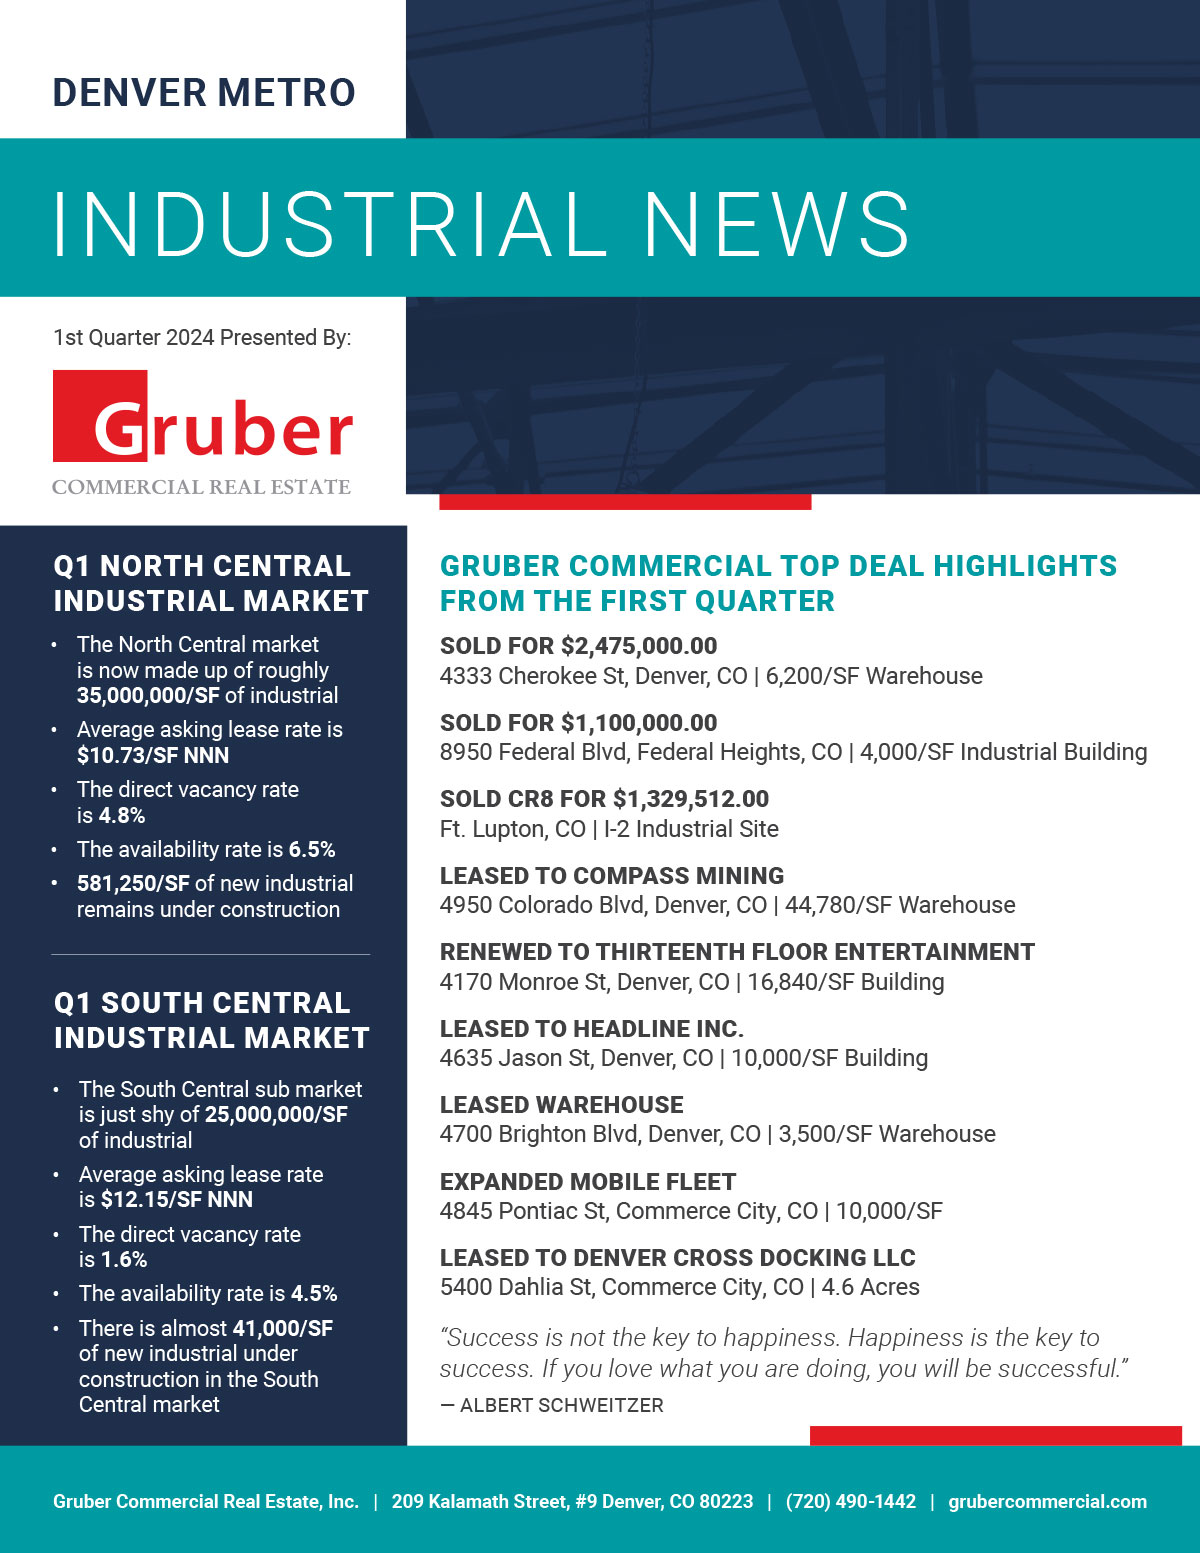 Gruber Newsletter: 1st Quarter 2024